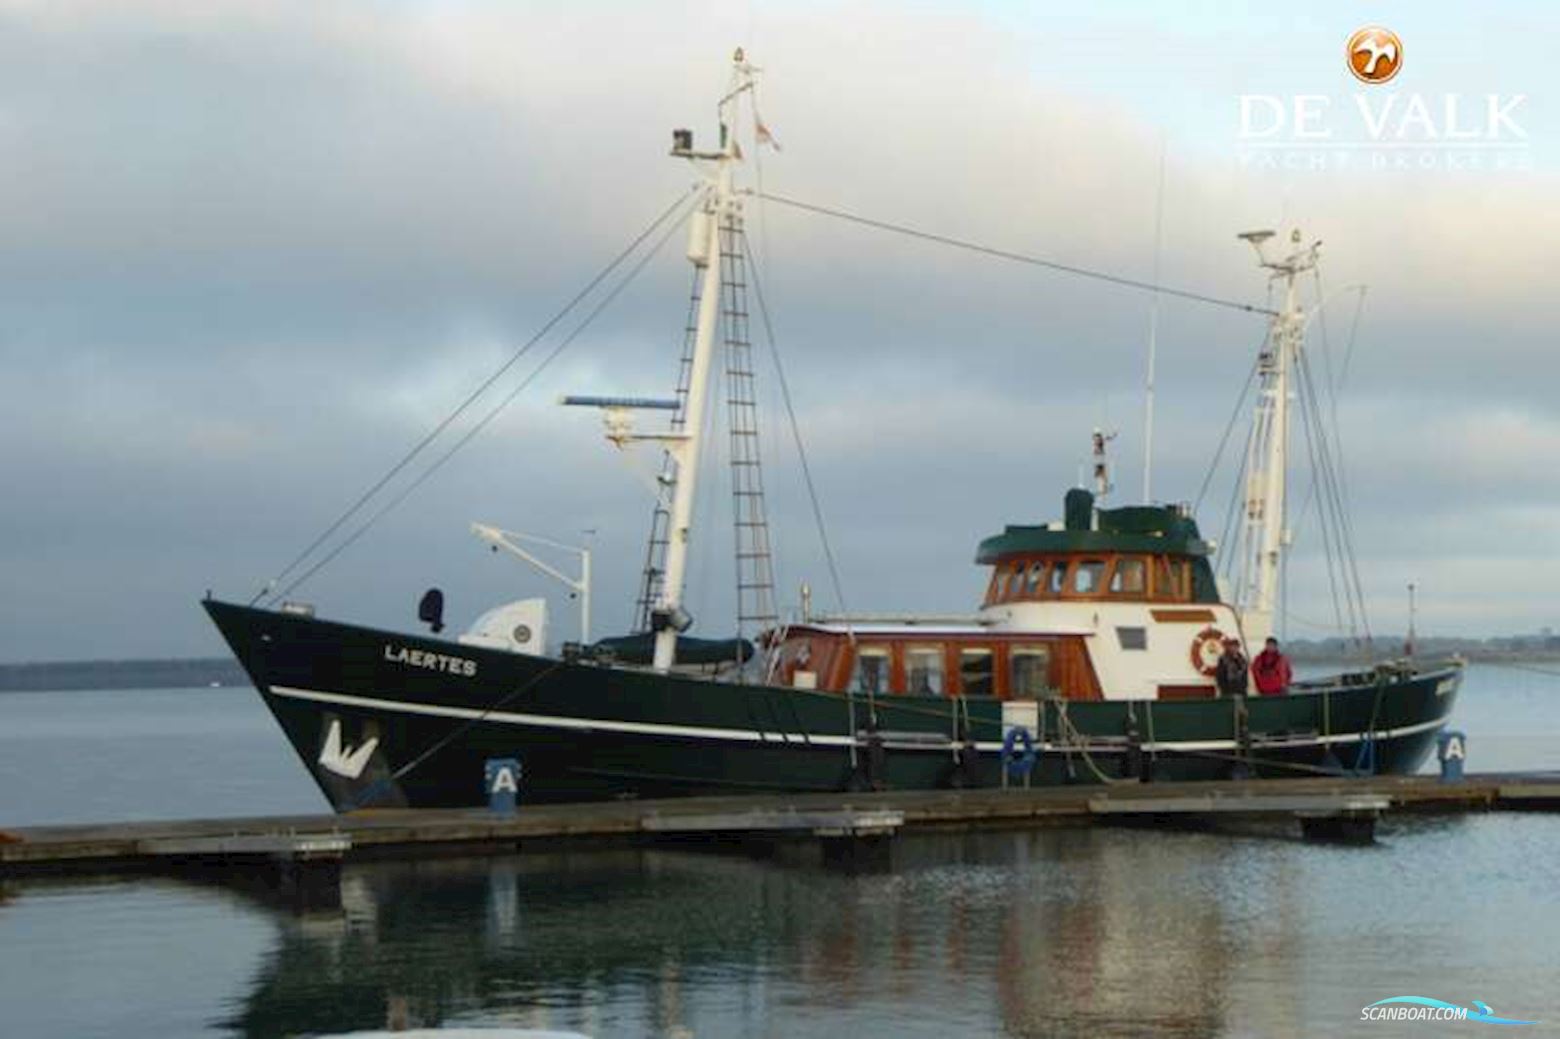 Dutch Custom Built Trawler Yacht Motorbåd 1966, med Gardener motor, Holland